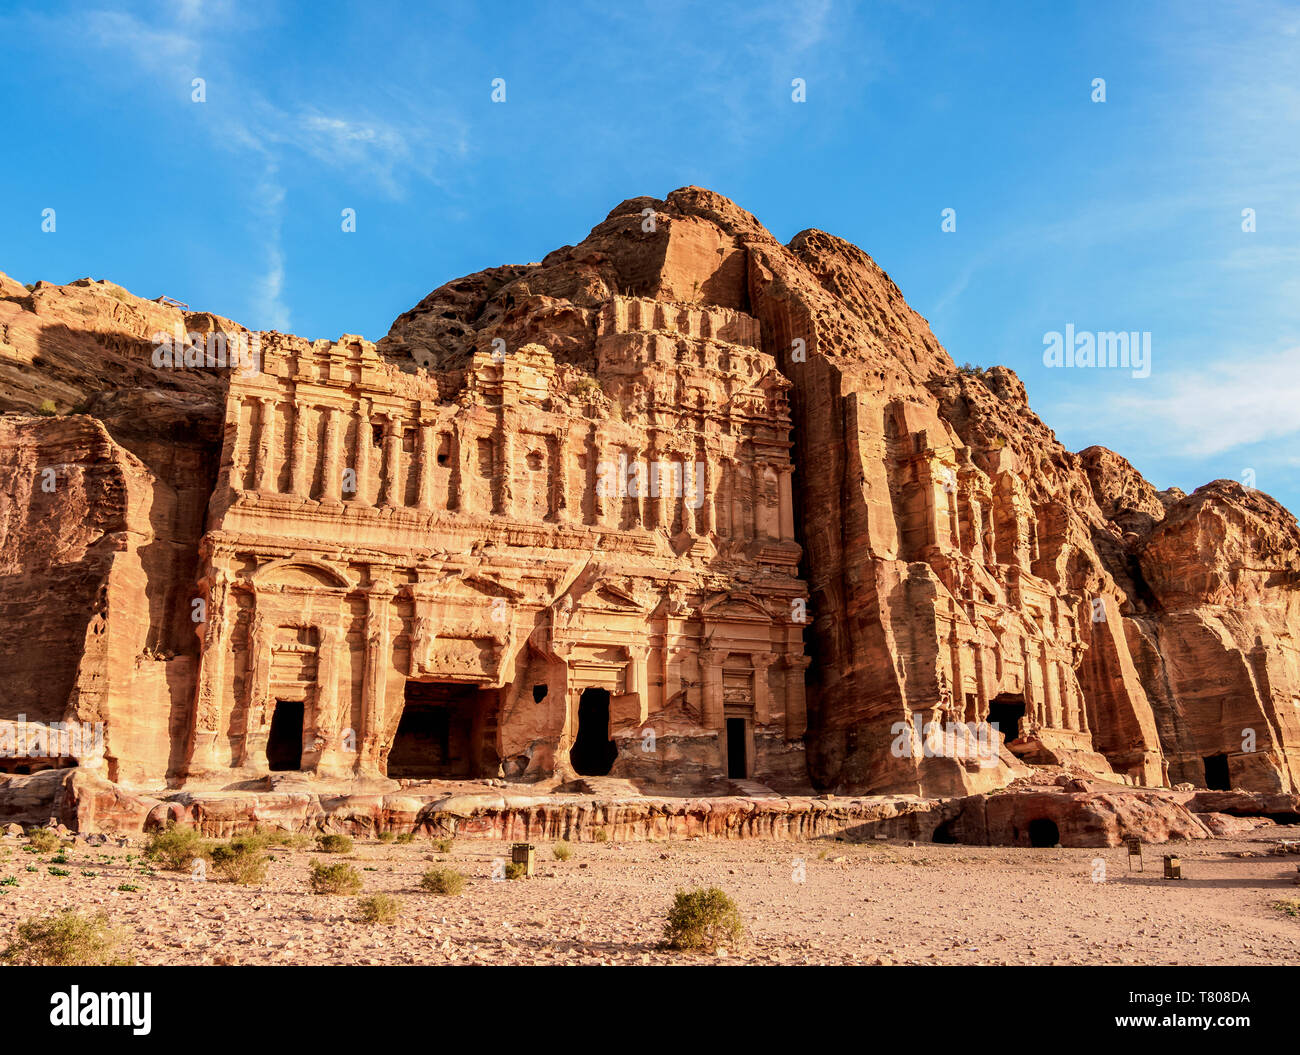 Palais et tombeaux de Corinthe, Petra, Site du patrimoine mondial de l' UNESCO, le Gouvernorat de Ma'an, Jordanie, Moyen-Orient Photo Stock - Alamy